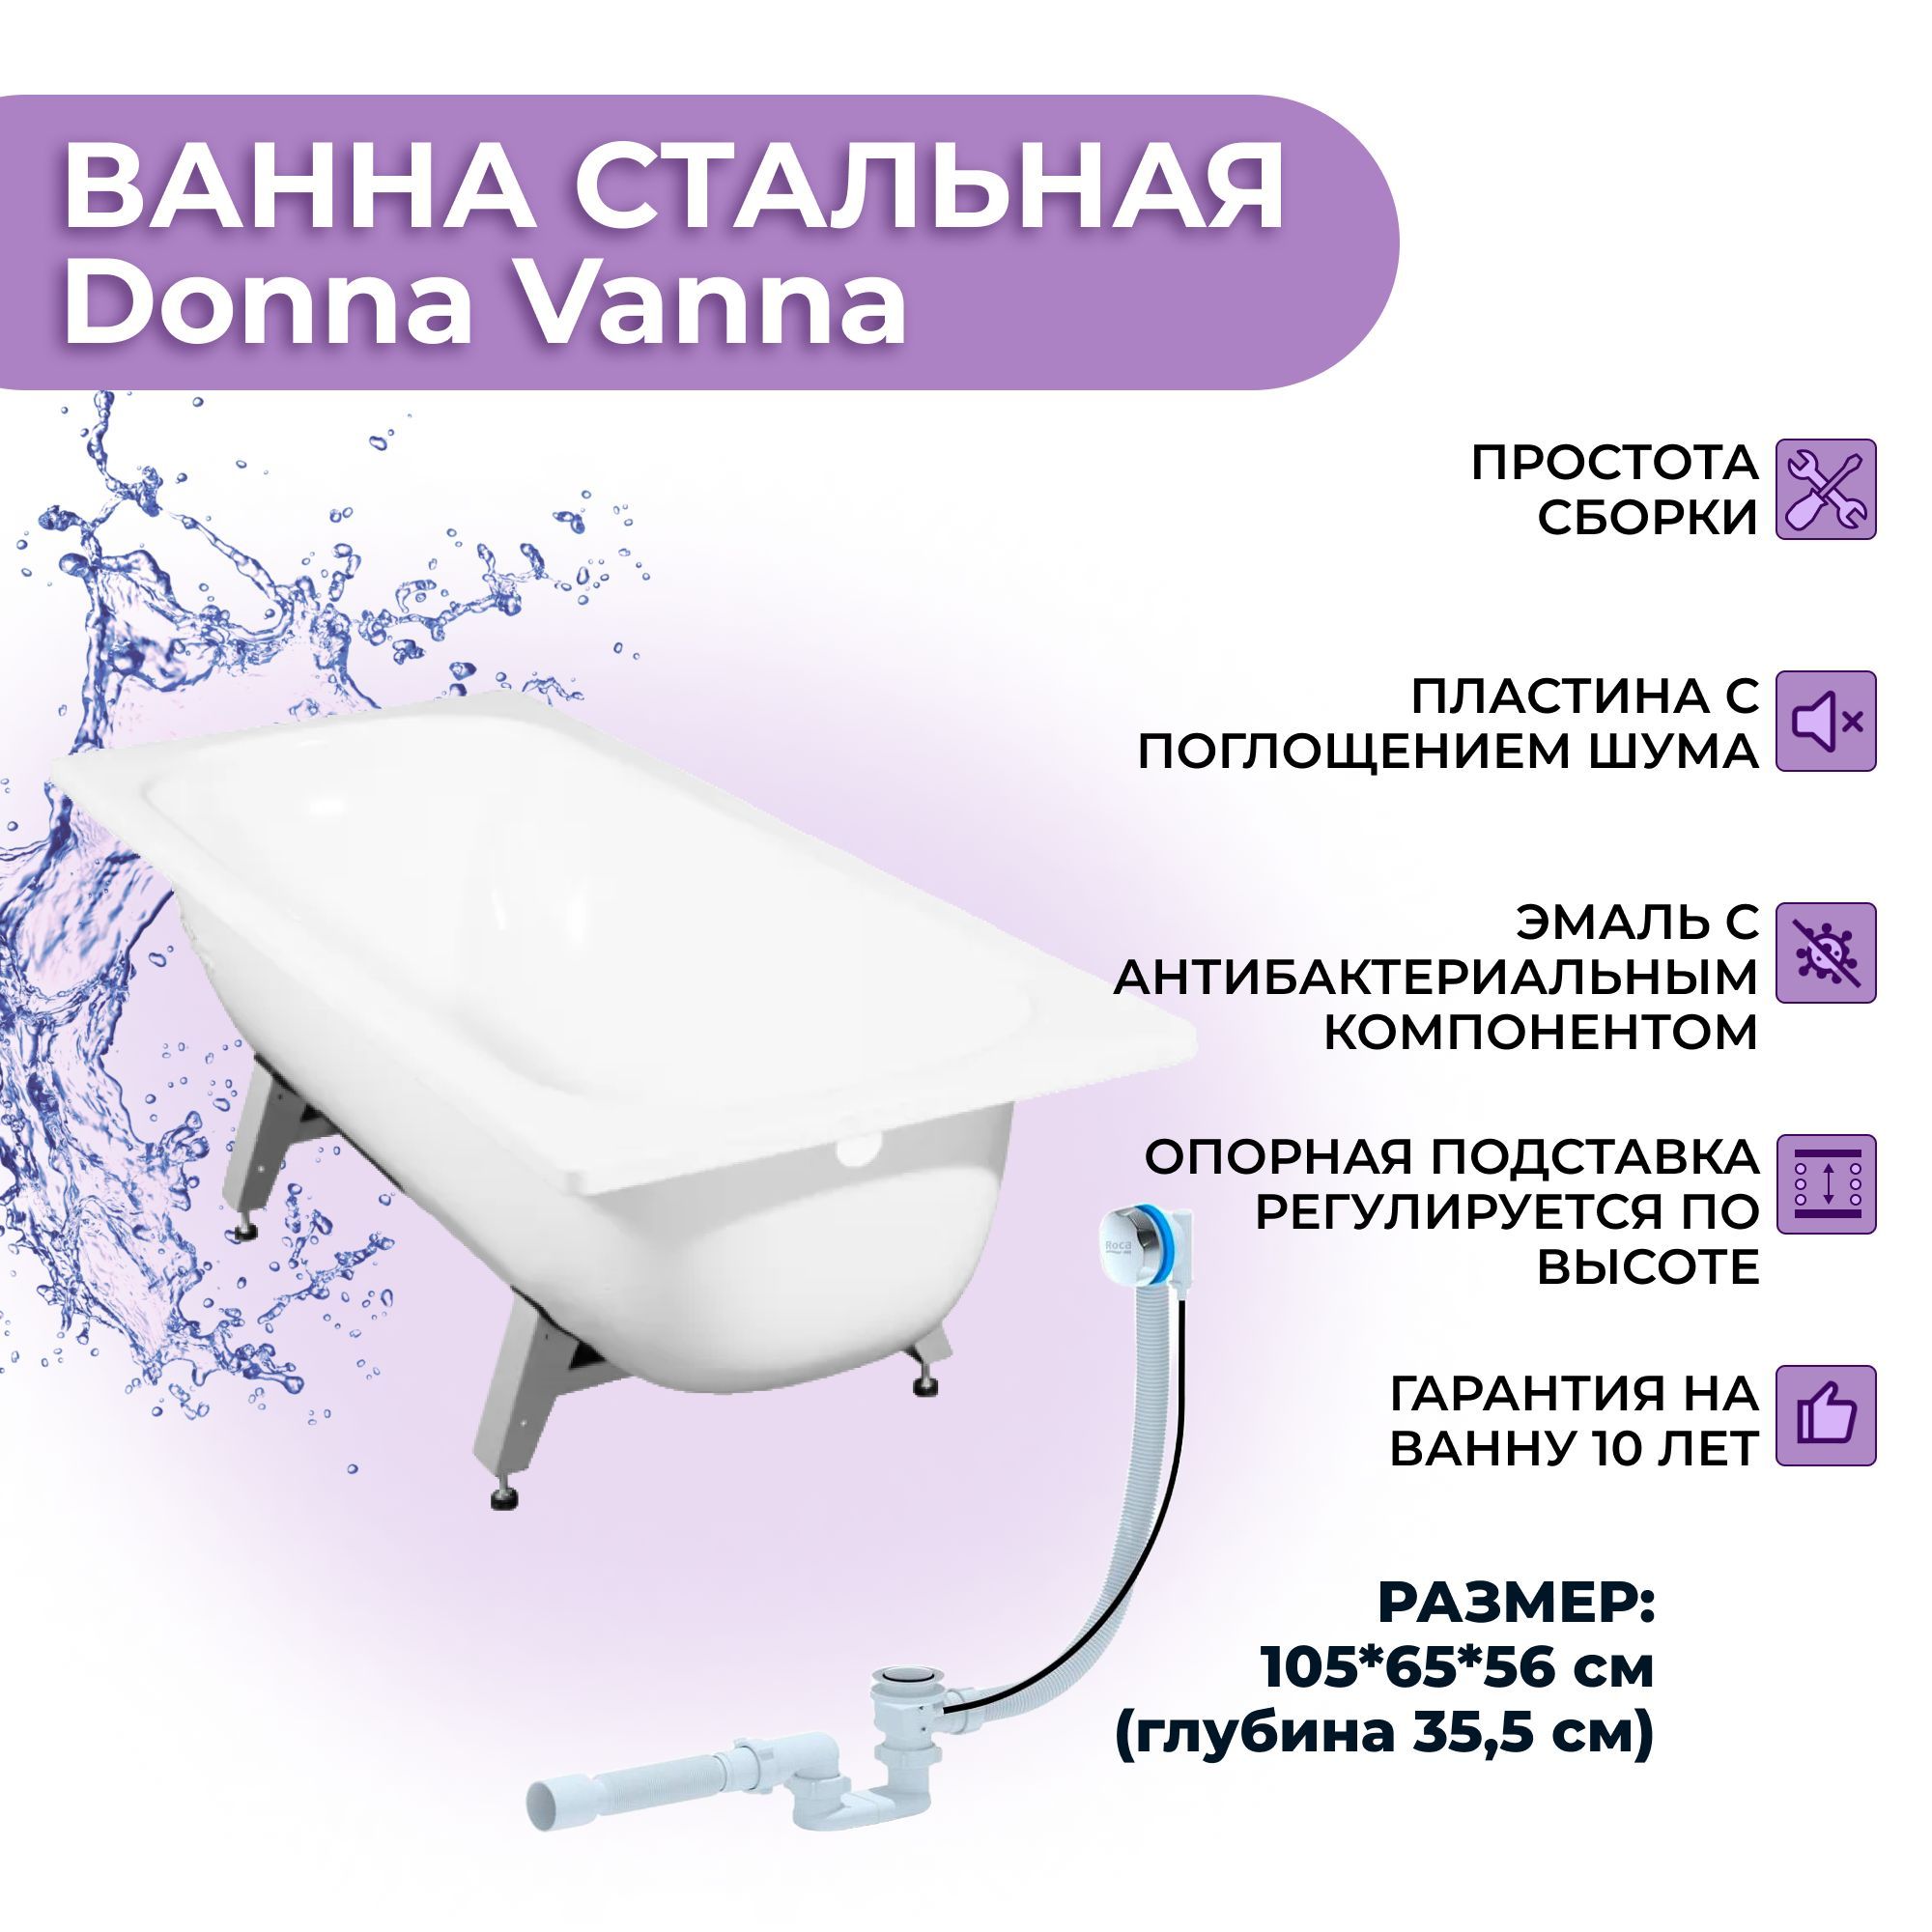 Donna Vanna на каркасе. Габариты ванны Donna Vanna. Стальная ванна виз 120 см. Опорная подставка для ванны виз инструкция. Виз donna vanna